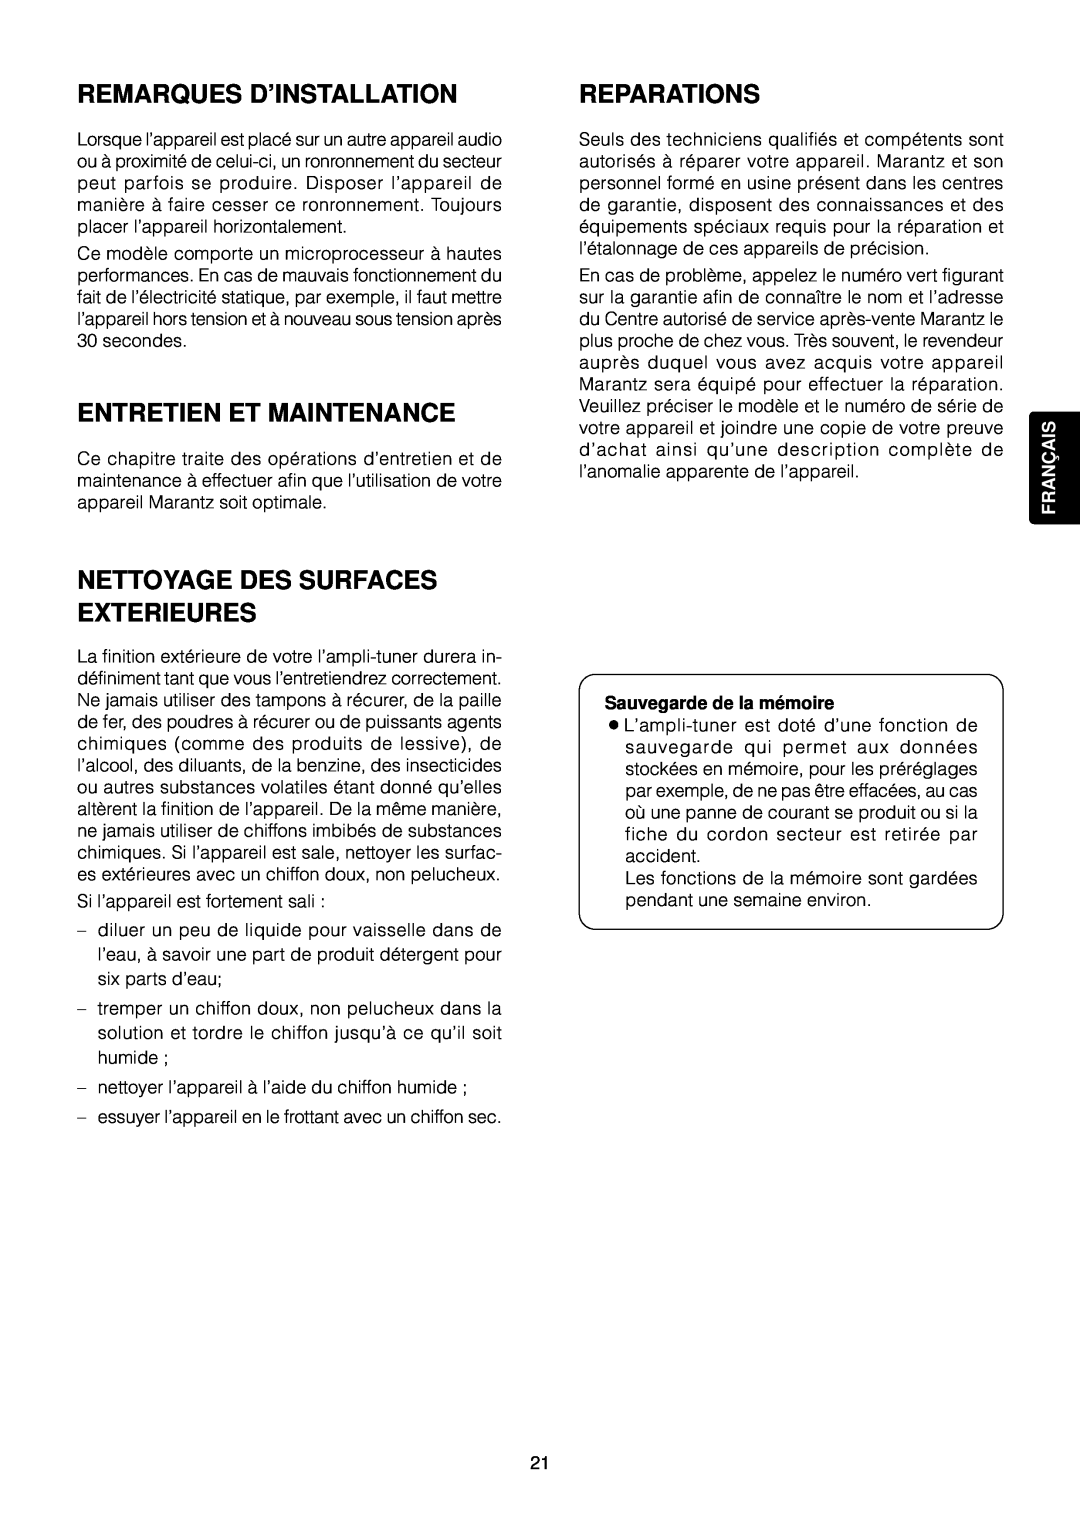 Marantz SR4120 manual Remarques D’Installation, Entretien Et Maintenance, Reparations, Nettoyage Des Surfaces Exterieures 